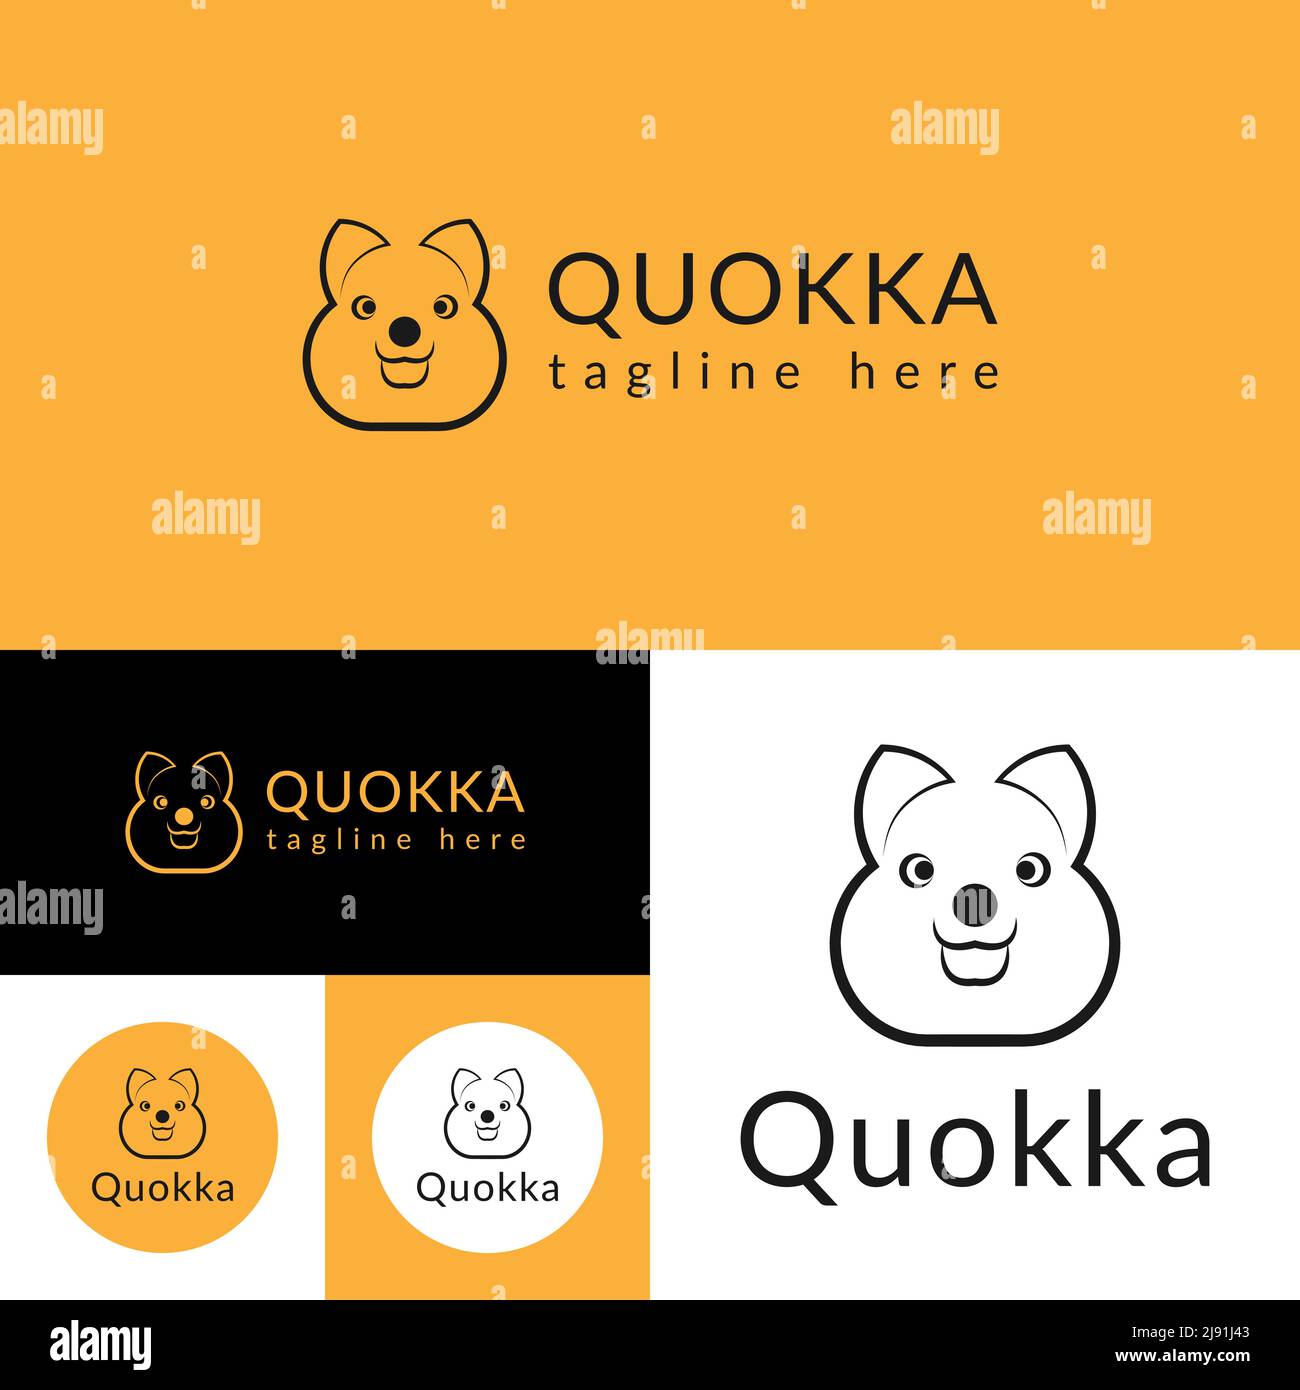 Пример шрифта Quokka #1